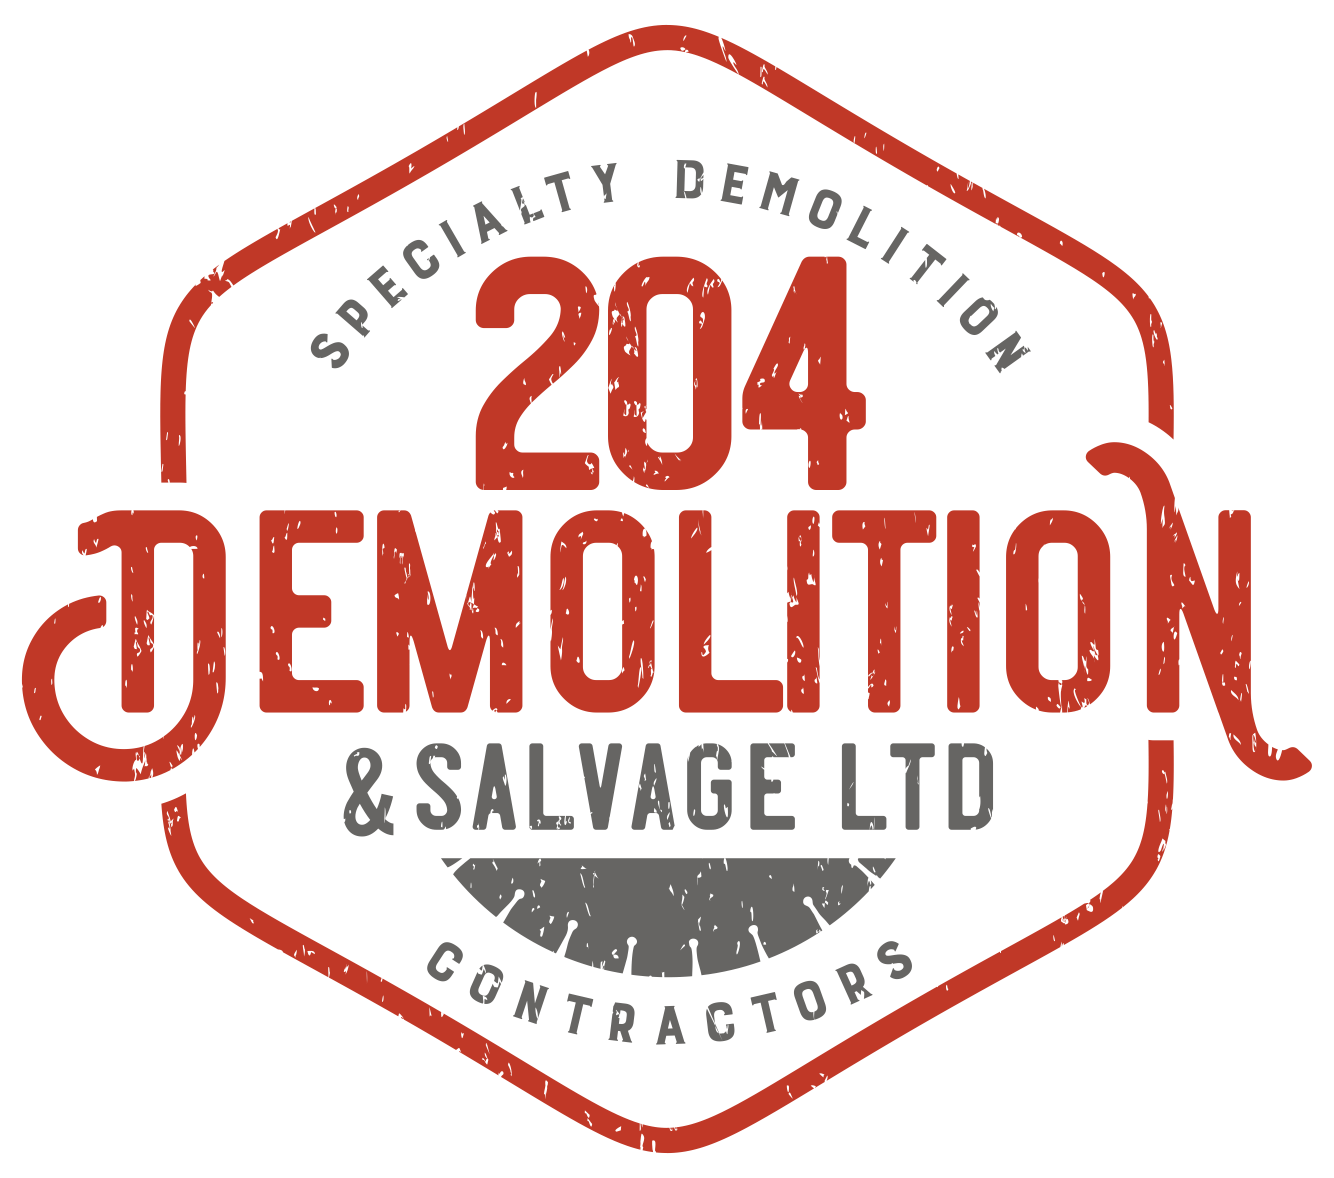 LOGO 204 Demolition & Salvage Ltd. 